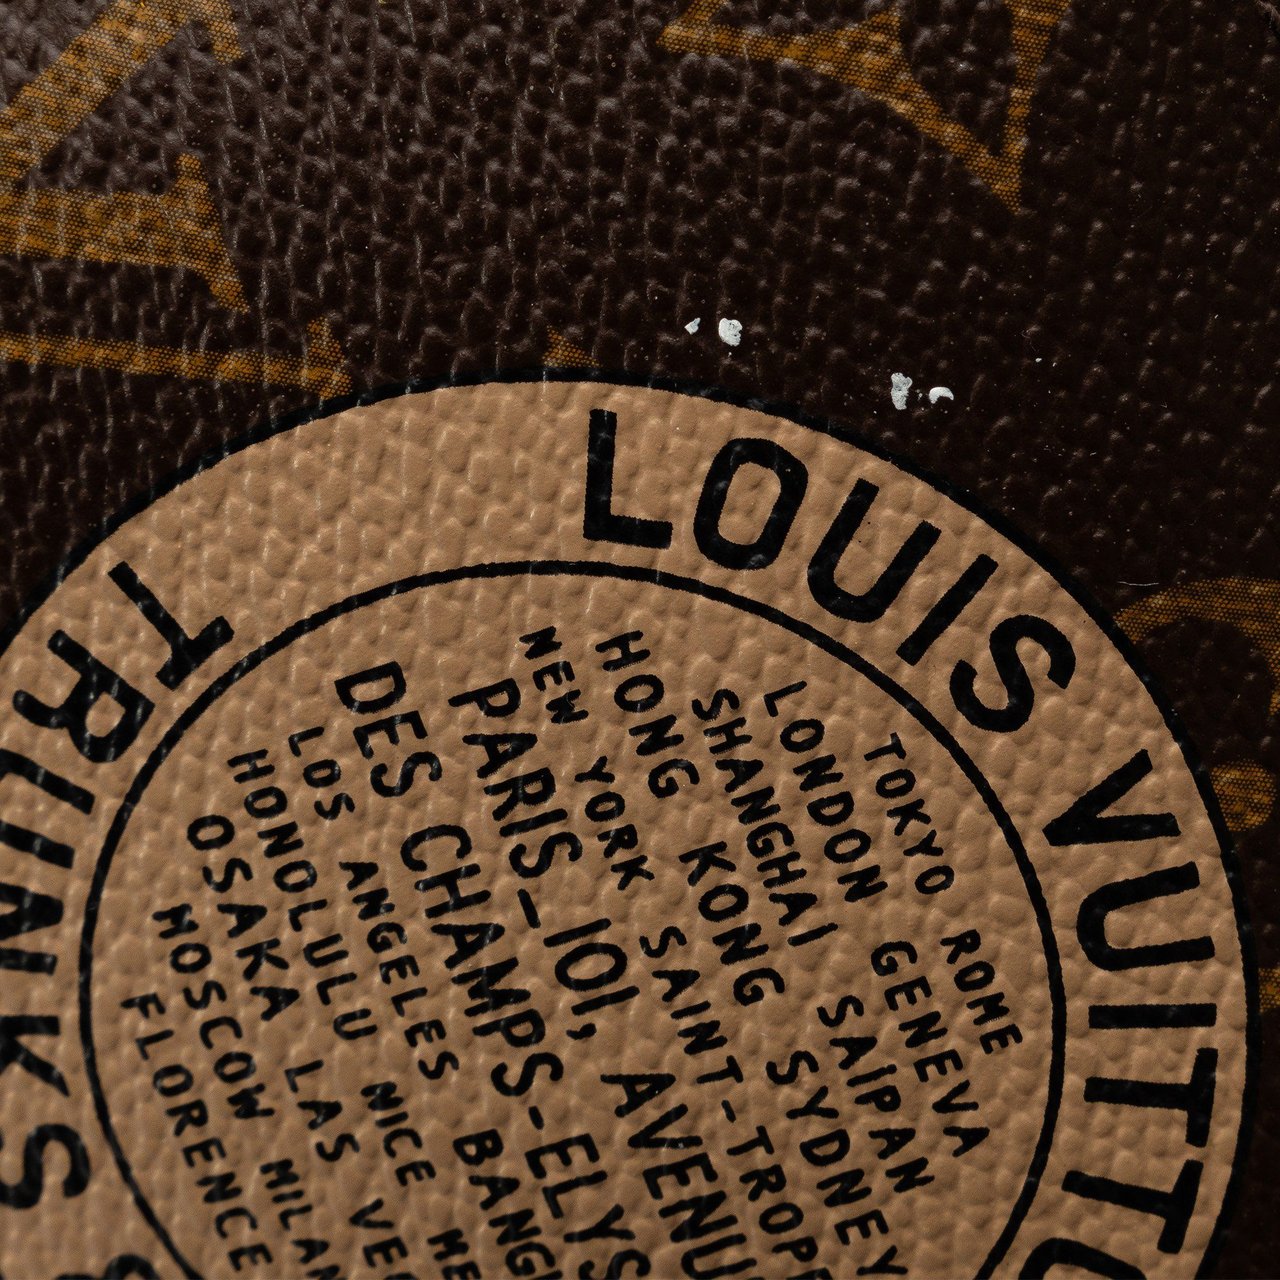 Louis Vuitton Monogram Trunks and Bags Mini Pochette Accessoires Bruin